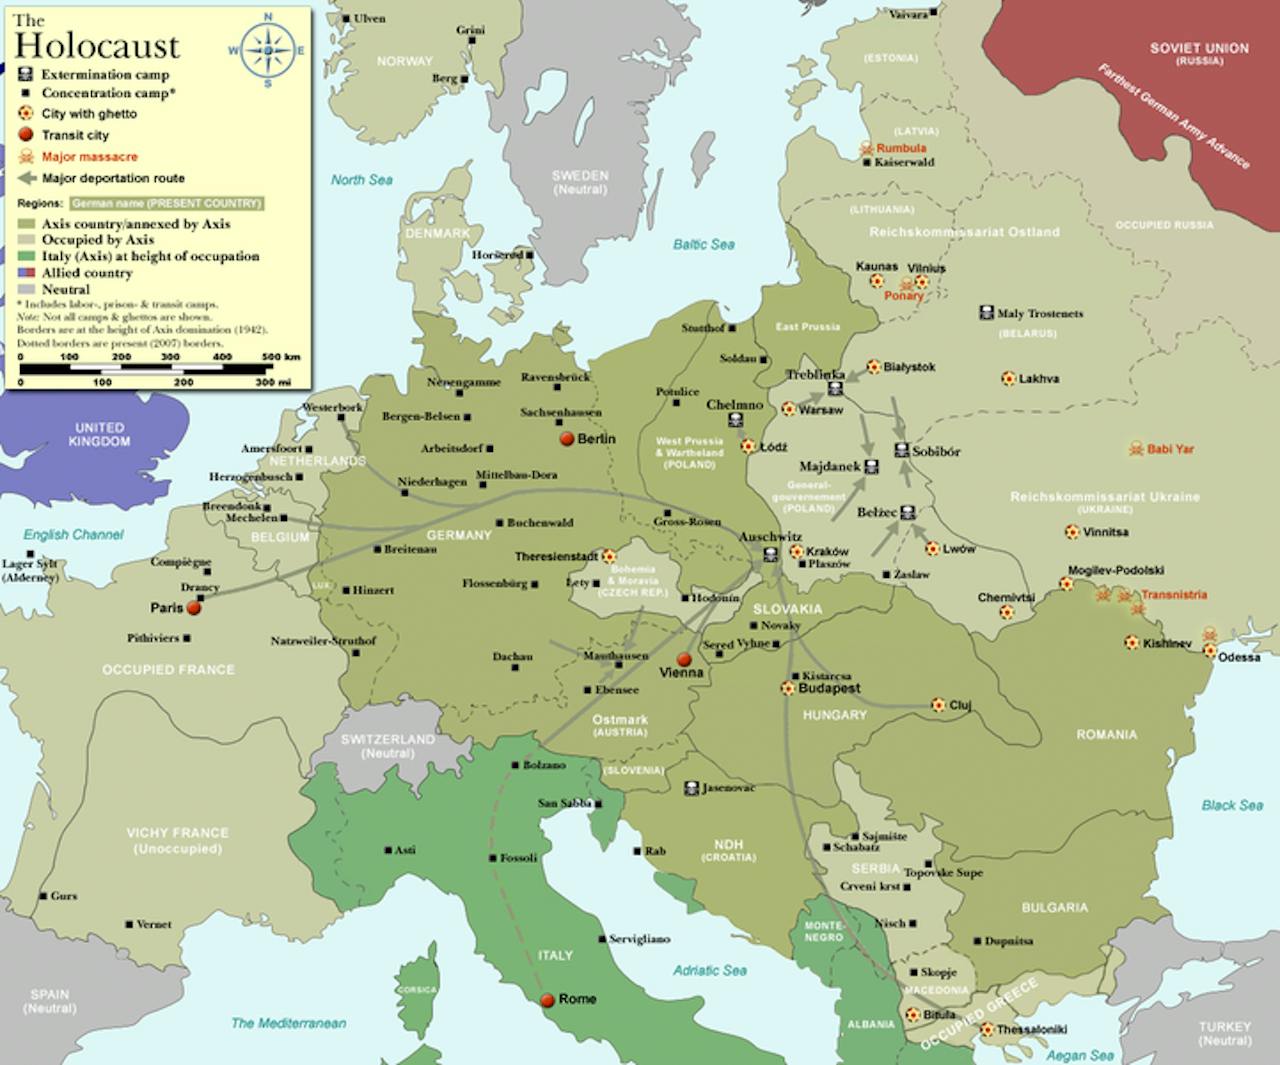 Een kaart met een weergave van de holocaust in Europa.